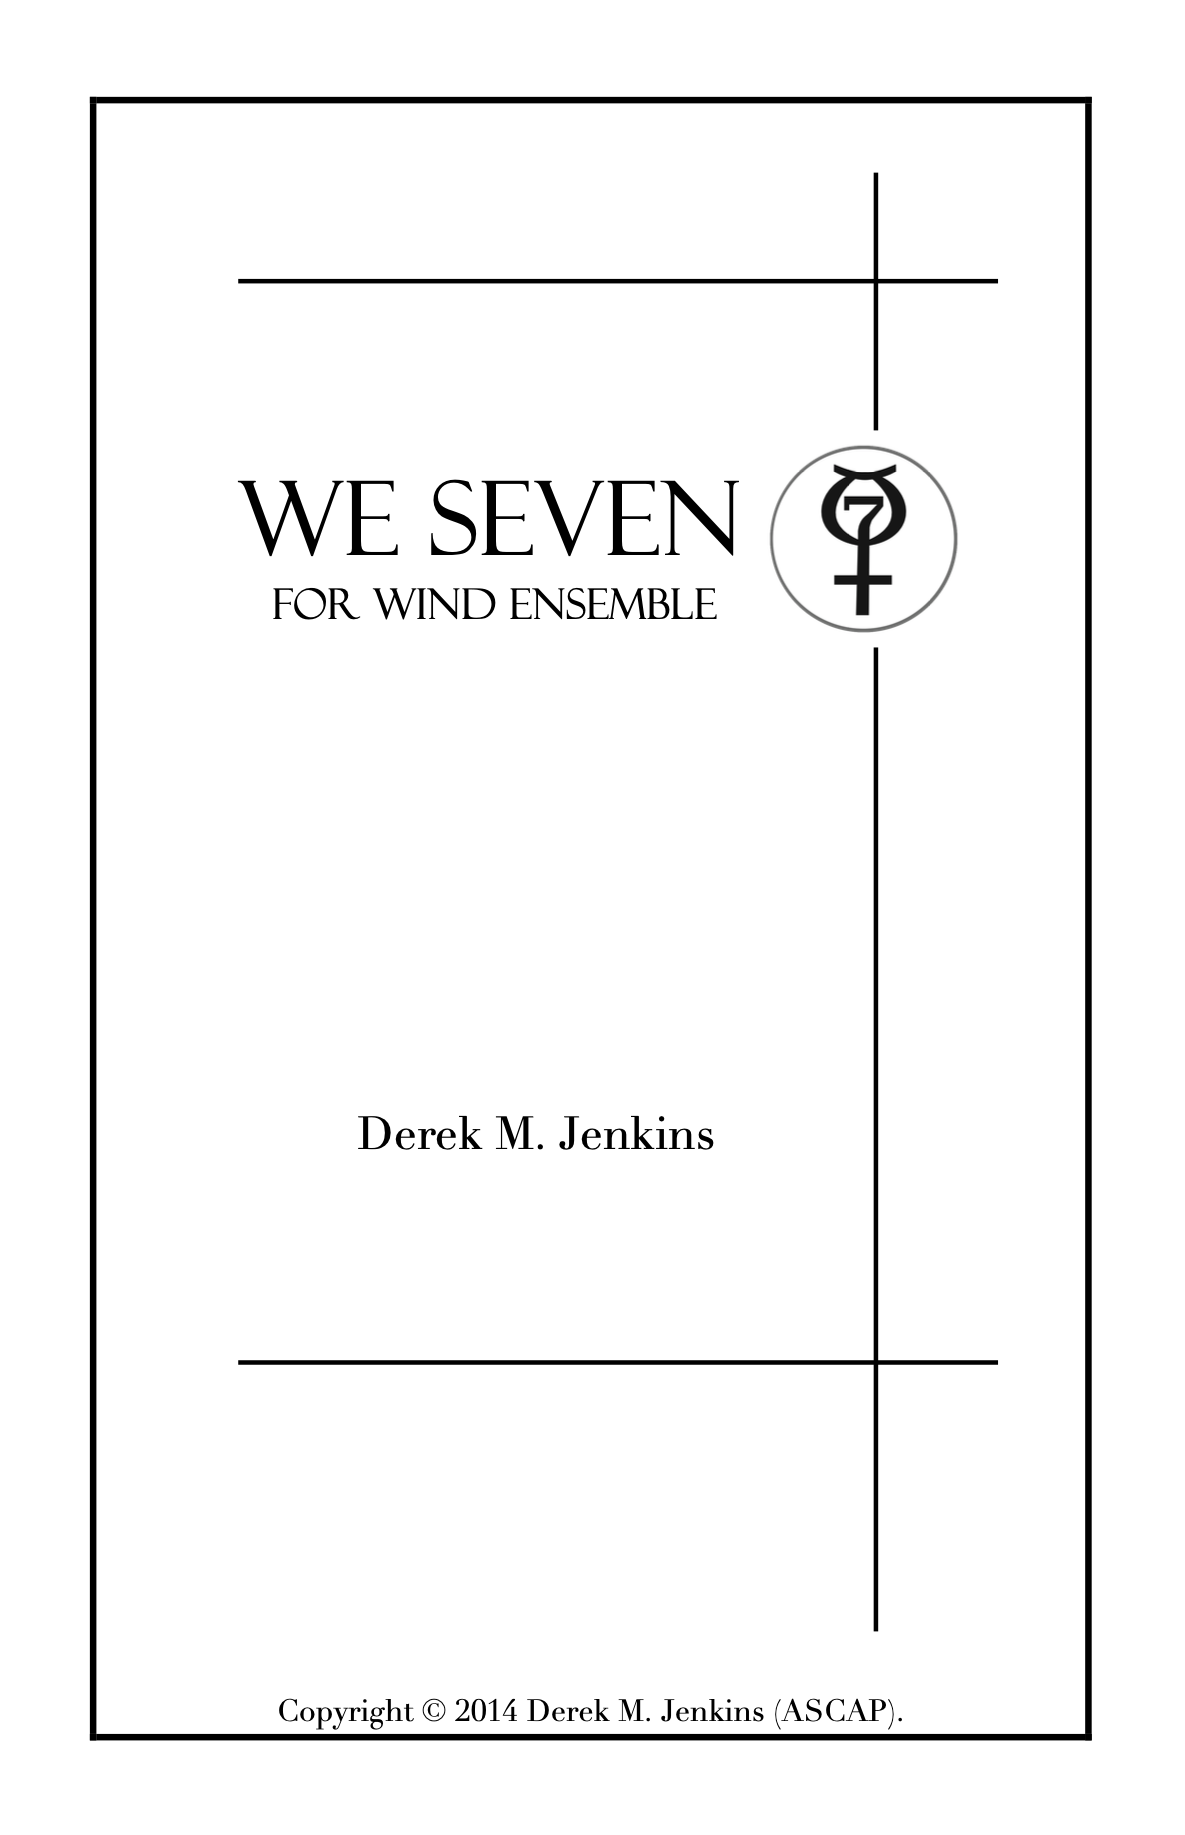 We Seven by Derek M. Jenkins